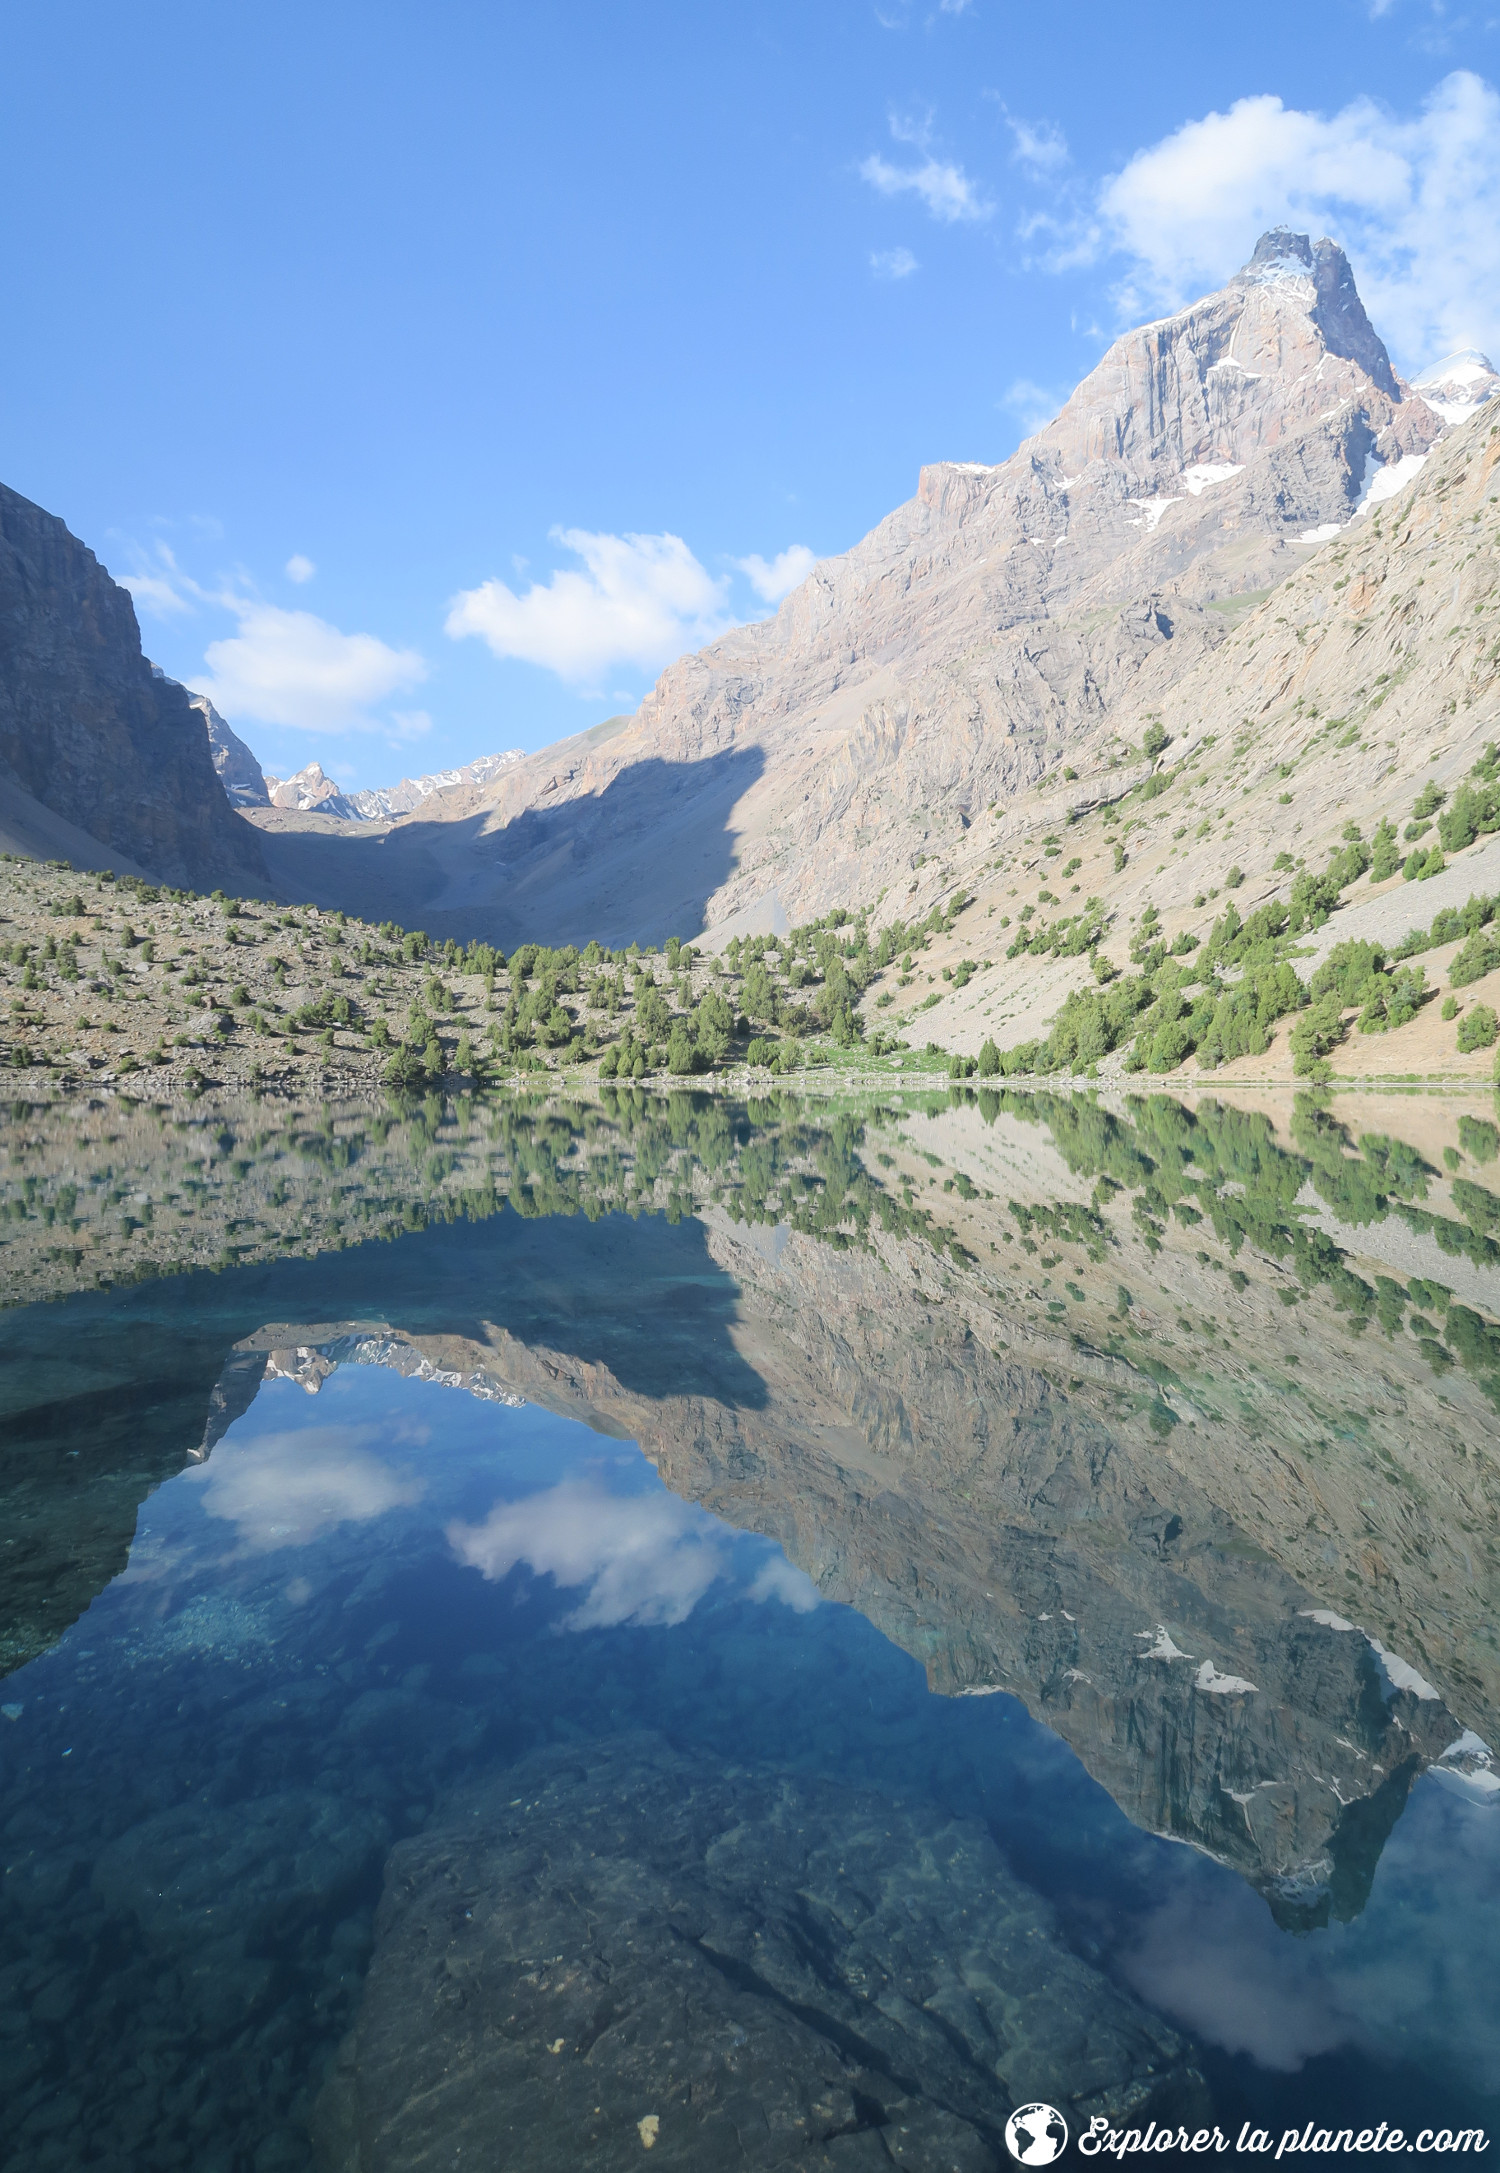 Le lac Alaudin dans les montagnes Fans. Un véritable miroir.